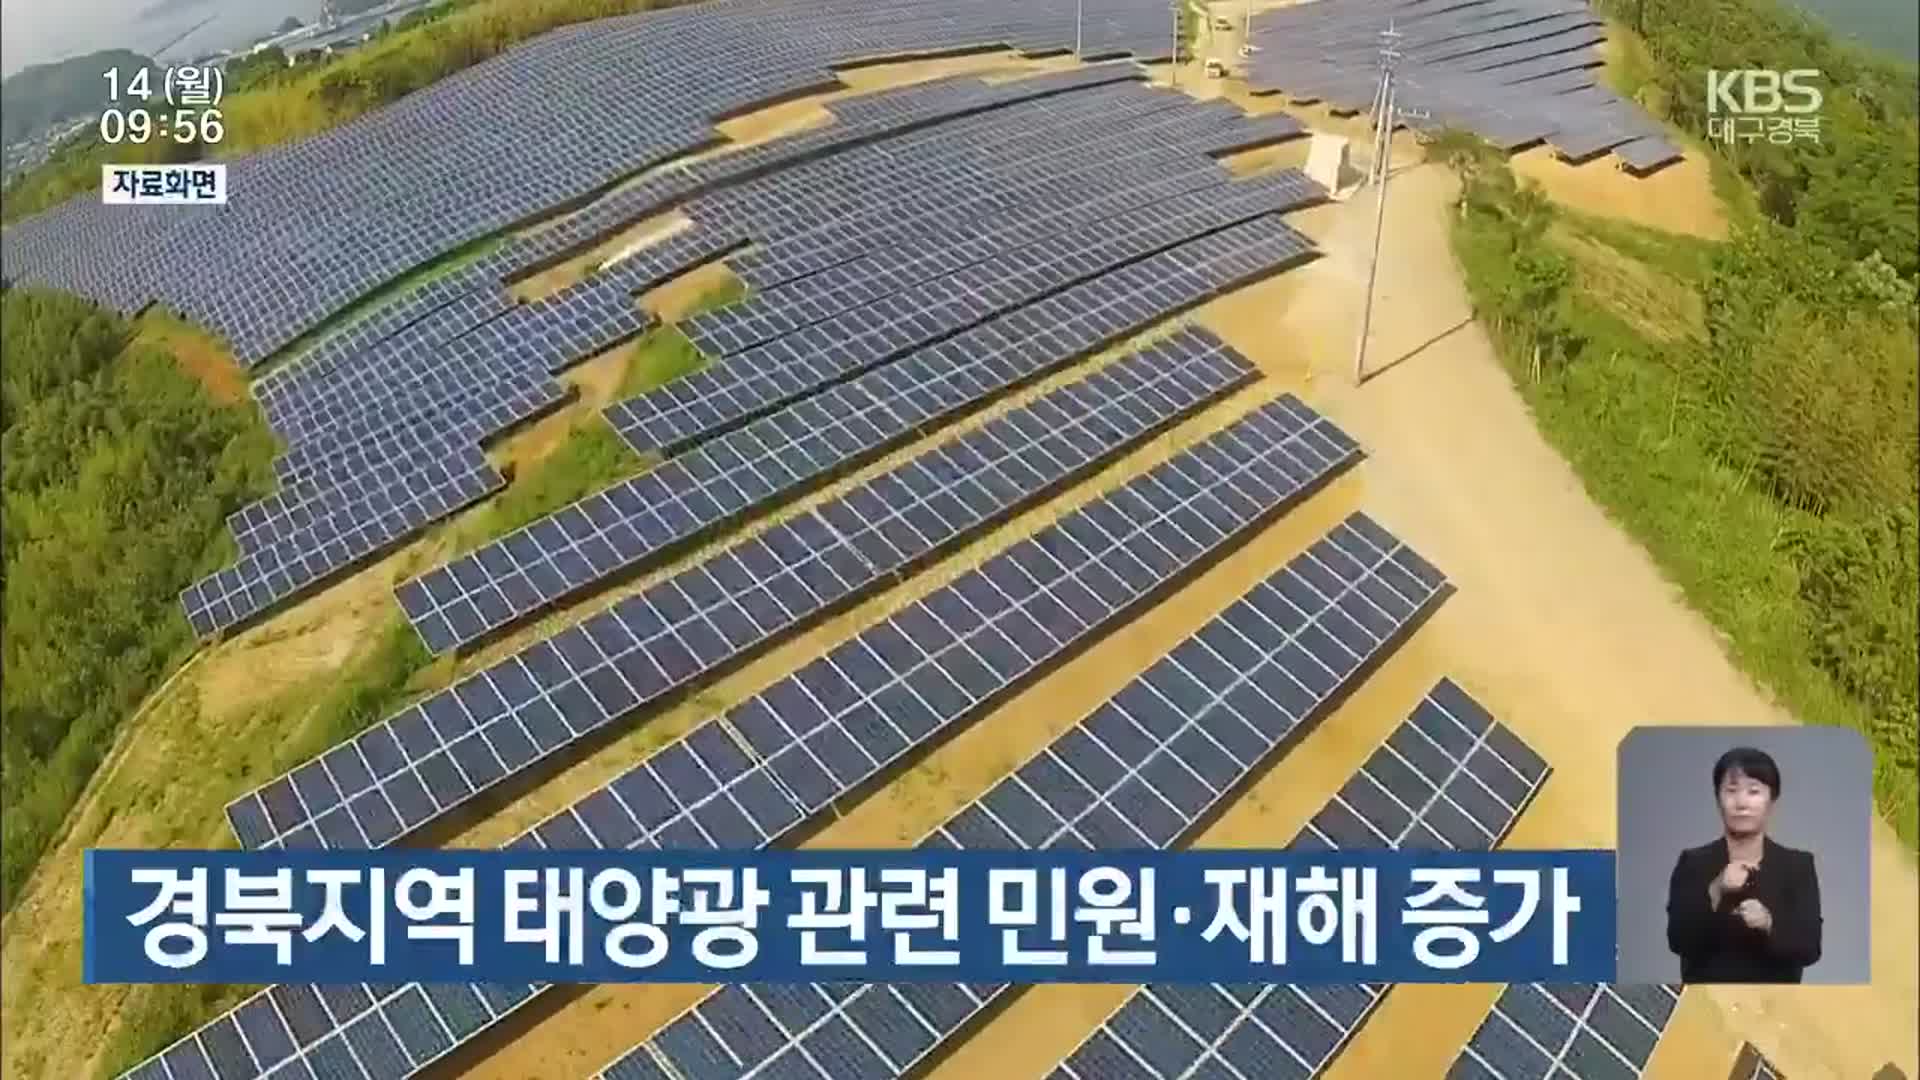 경북지역 태양광 관련 민원·재해 증가